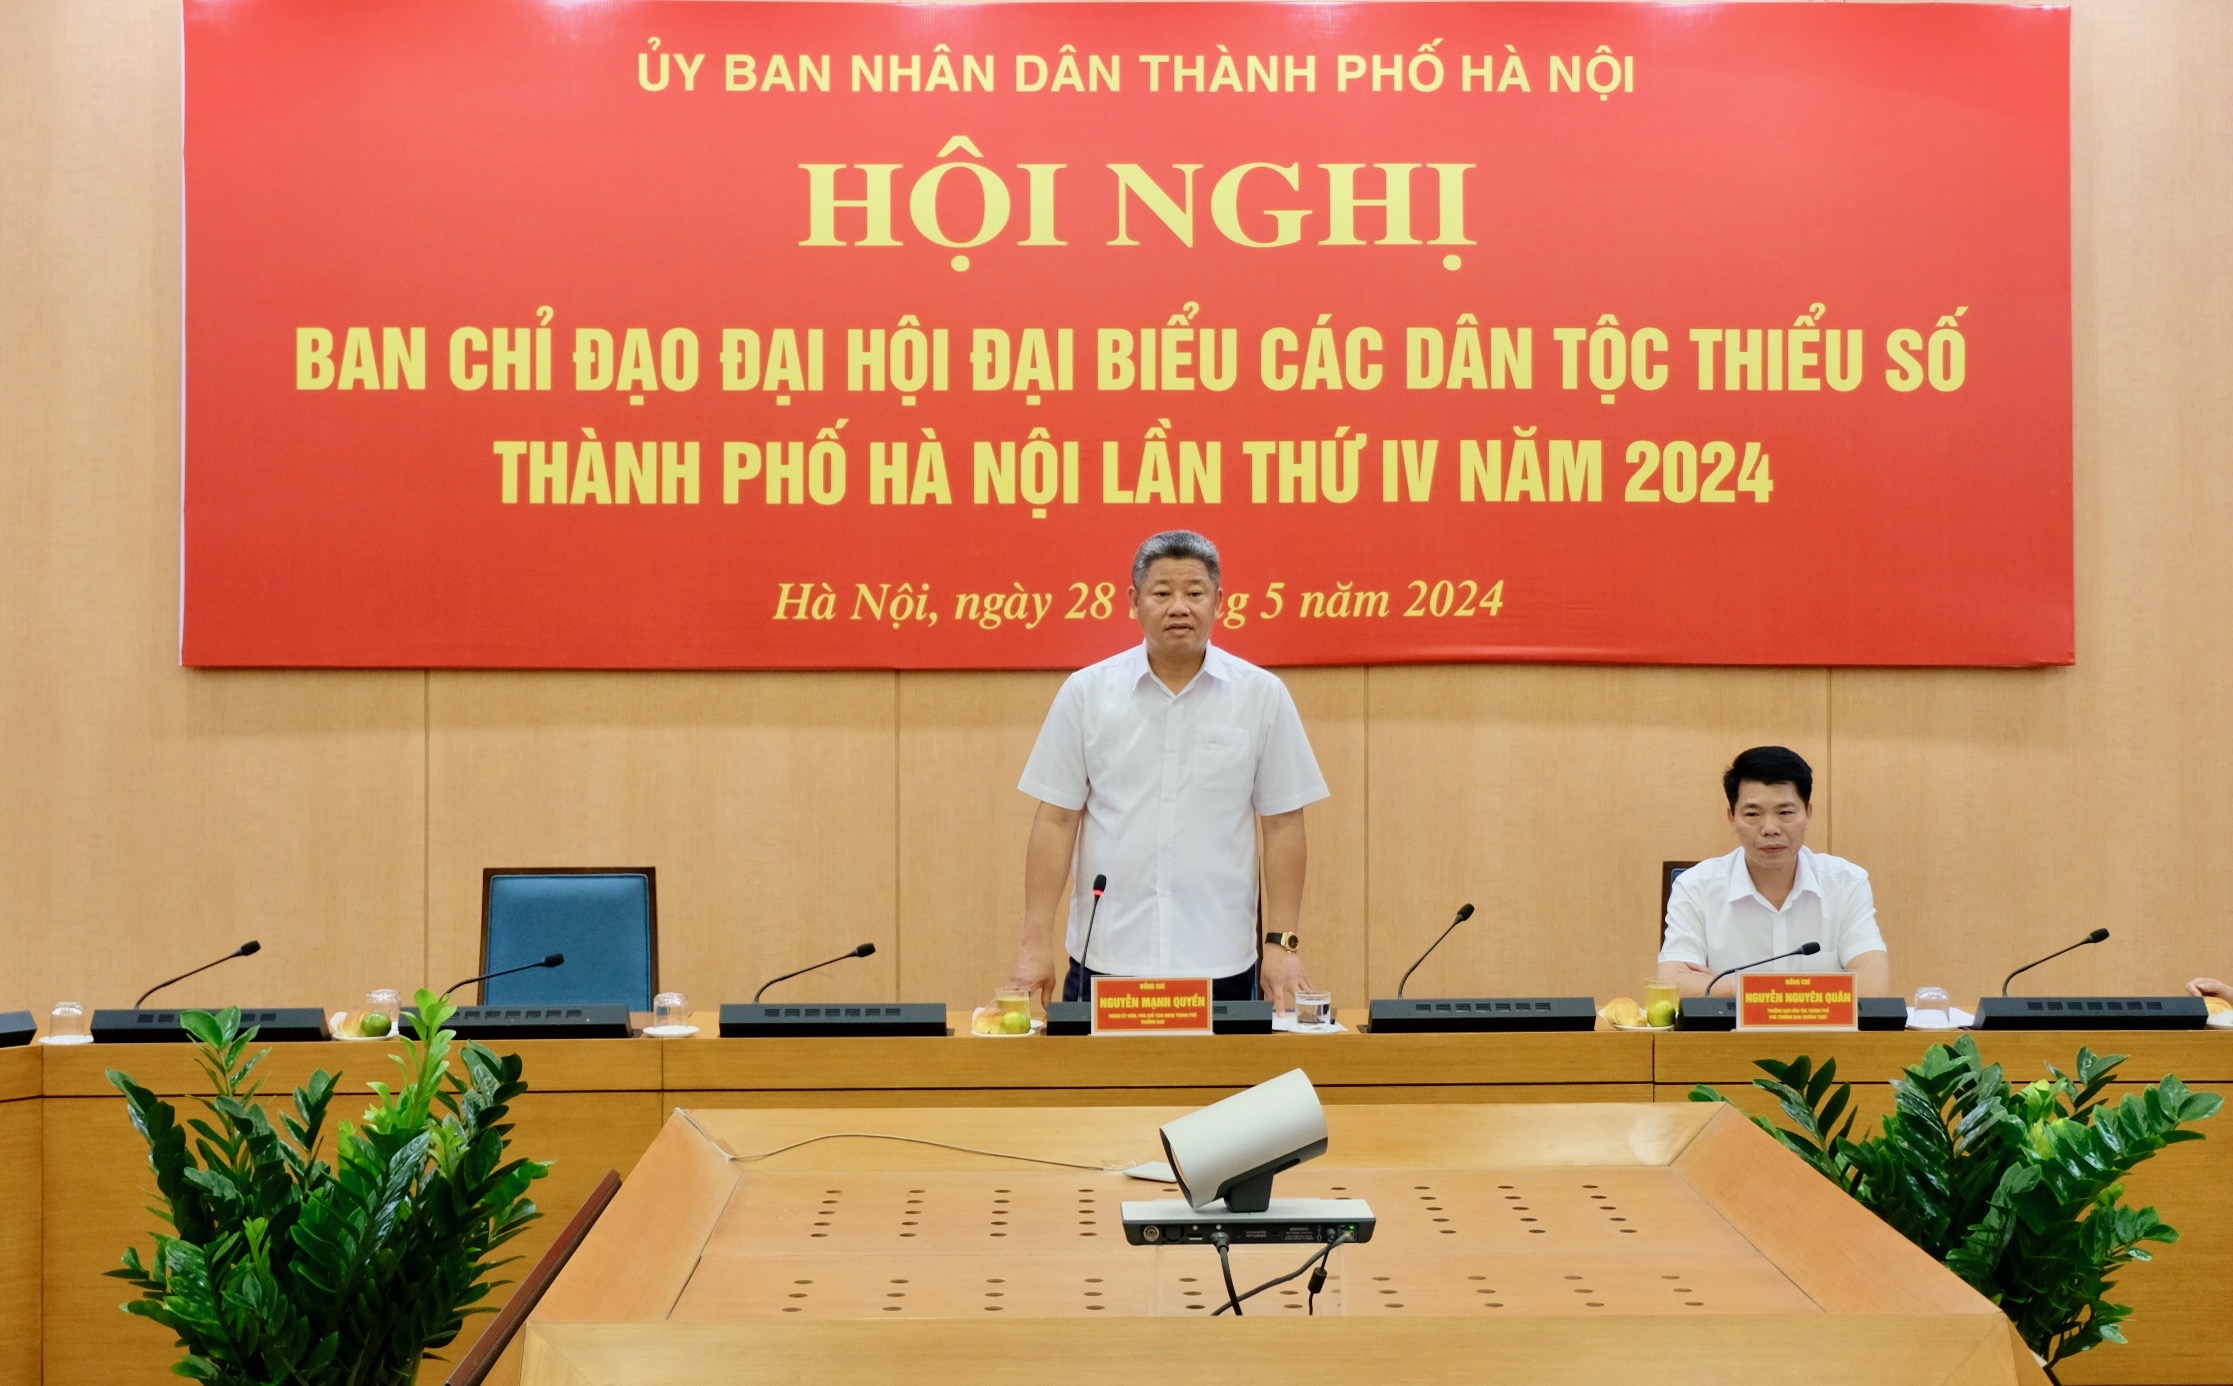 Phó Chủ tịch UBND TP Hà Nội Nguyễn Mạnh Quyền phát biểu chỉ đạo tại hội nghị.